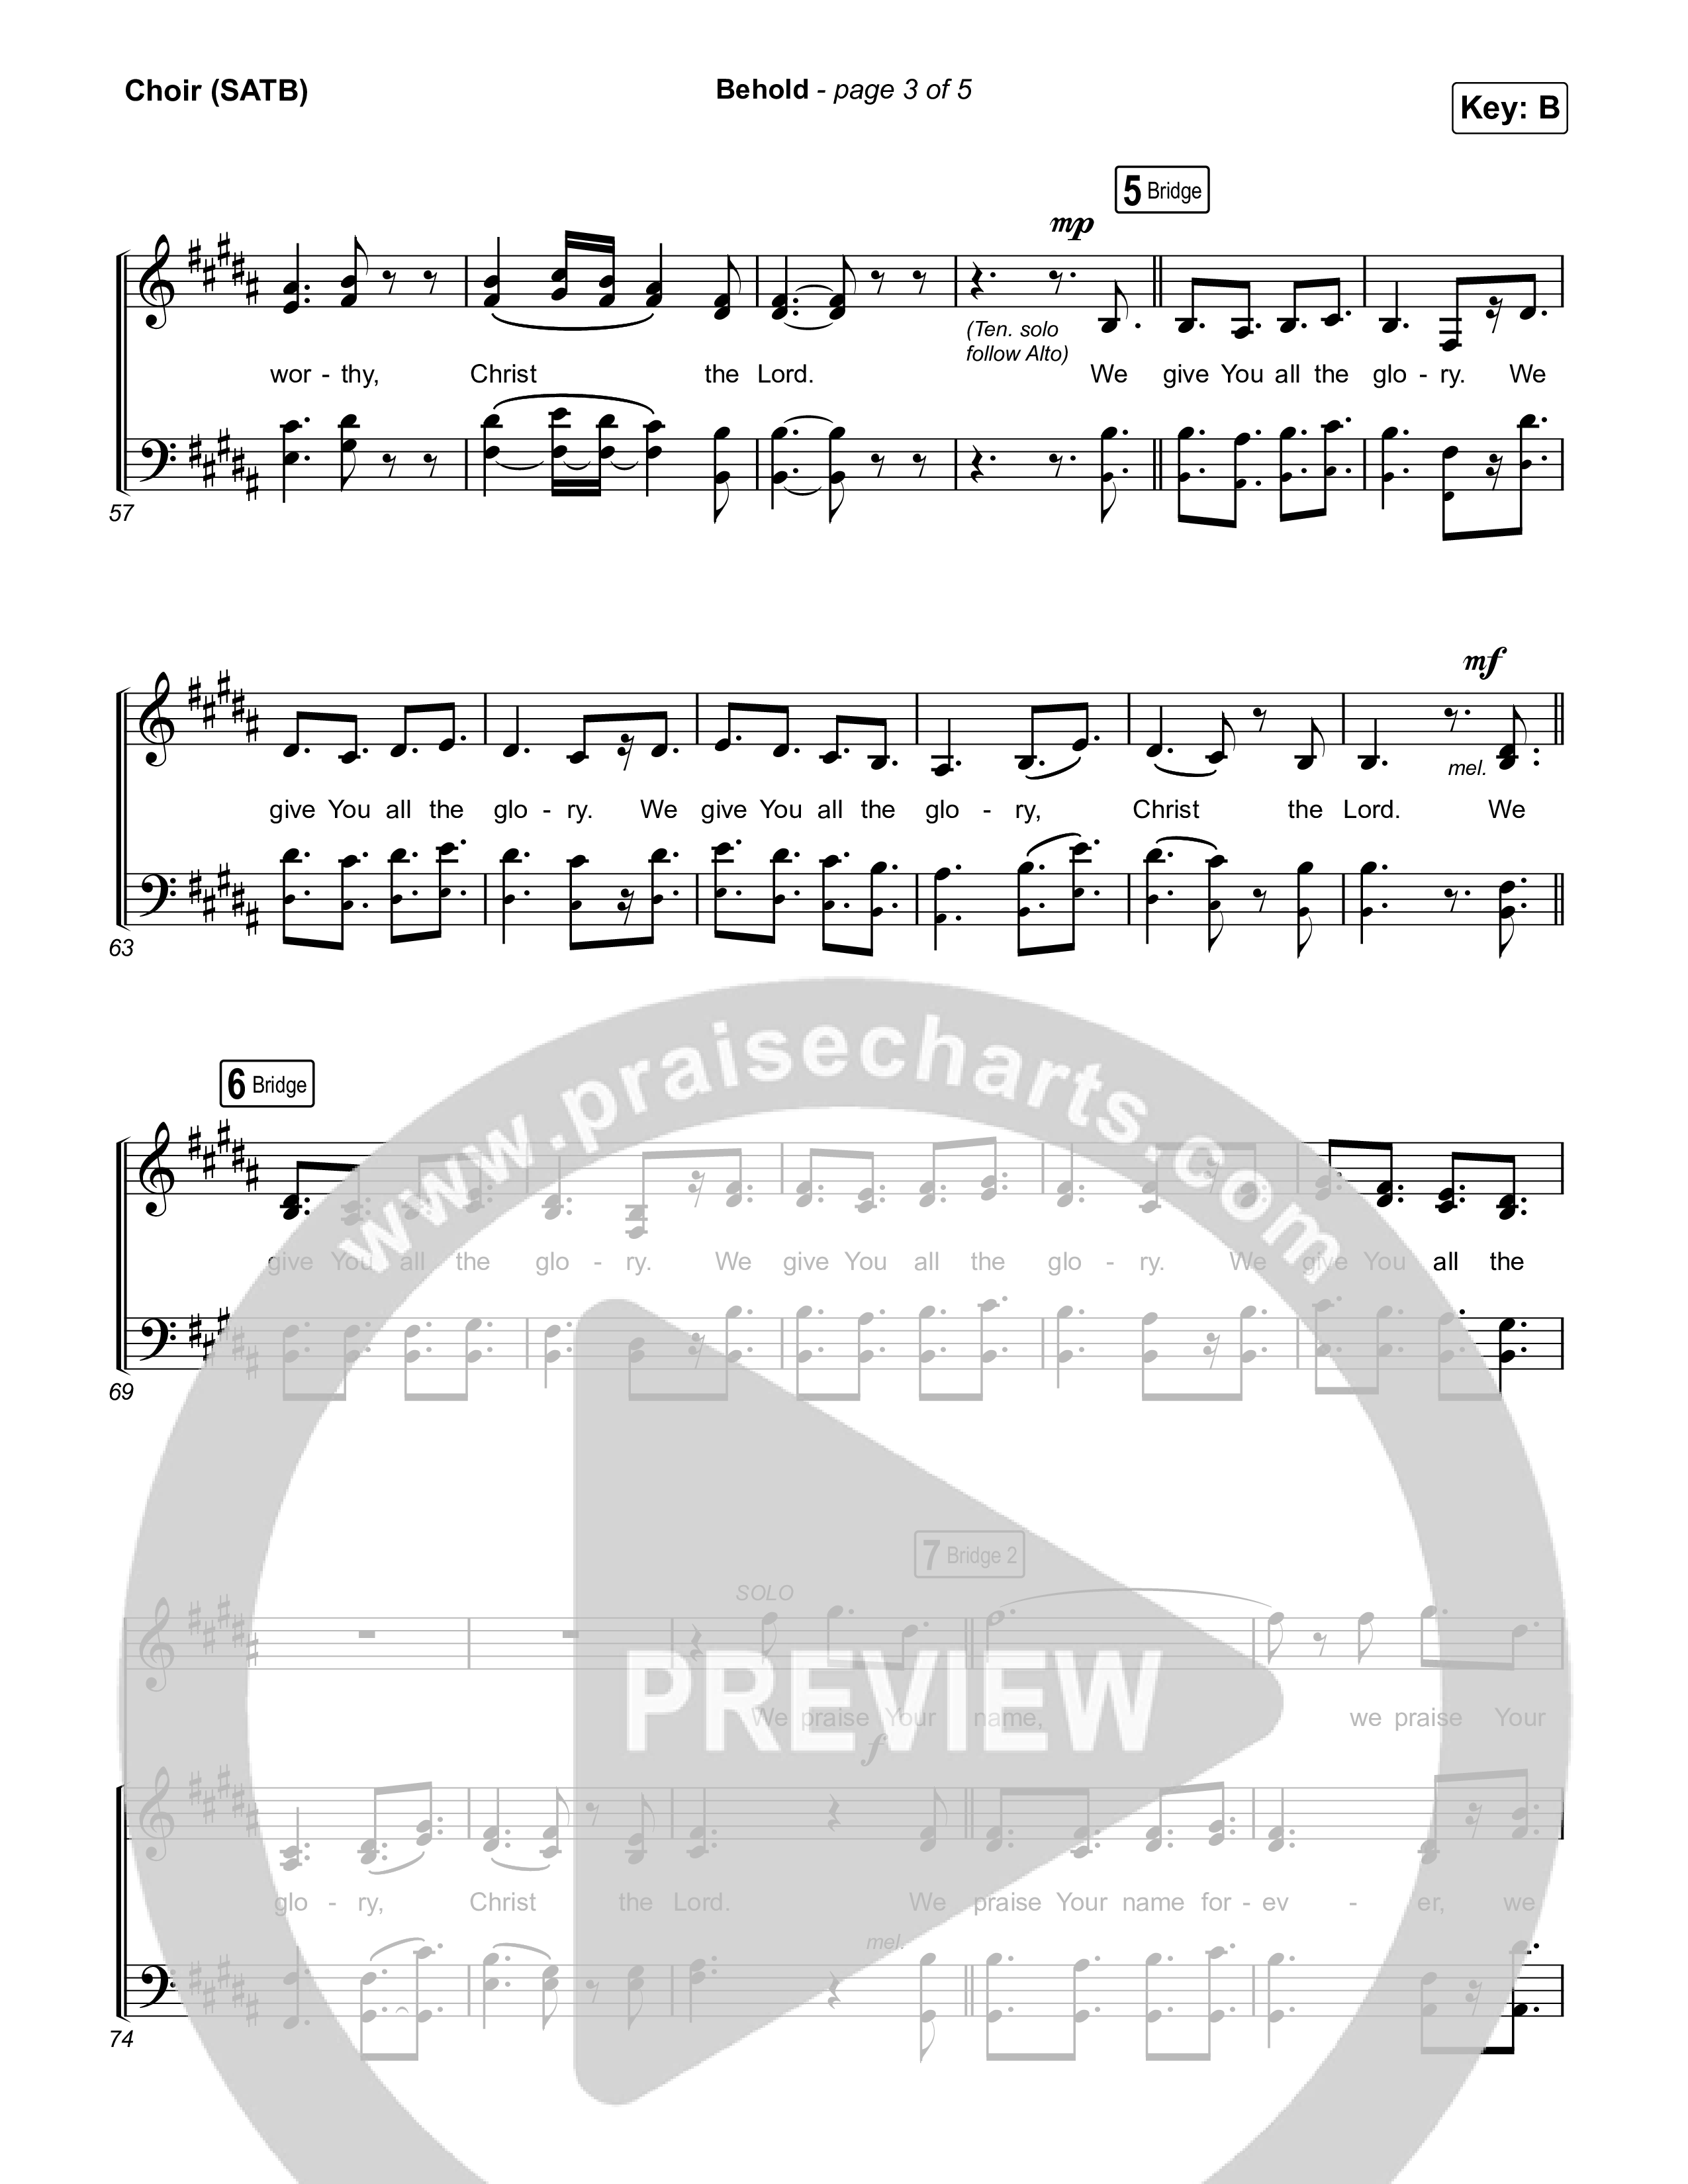 Behold (Choral Anthem SATB) Choir Sheet (SATB) (Phil Wickham / Anne Wilson / Arr. Mason Brown)